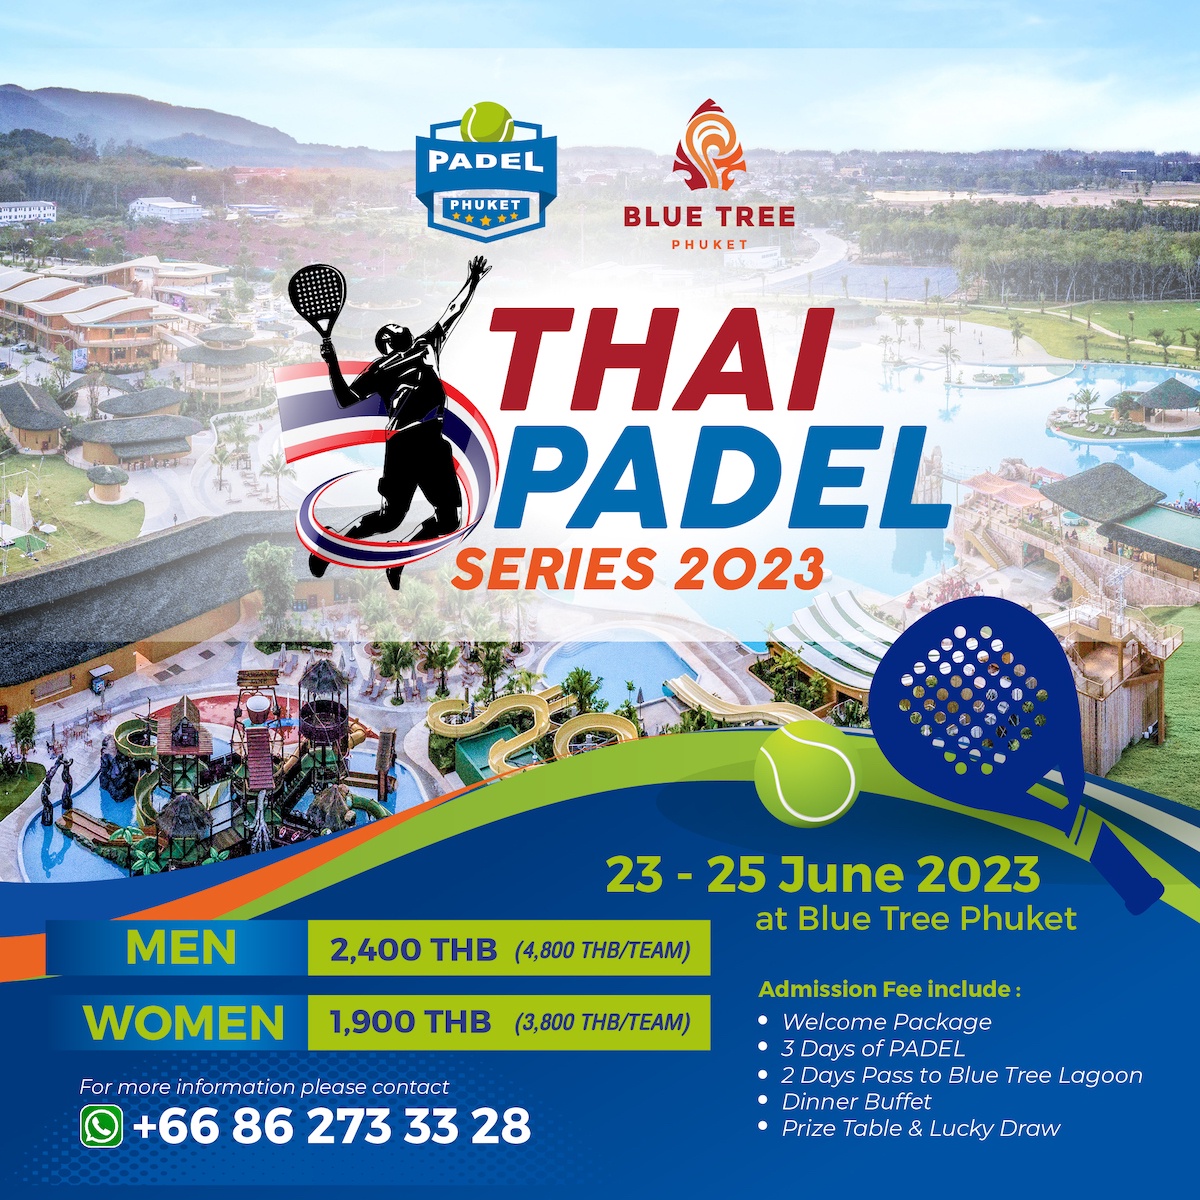 บลูทรี ภูเก็ต เปิดสนามต้อนรับนักกีฬาชาวไทย-ต่างชาติ ครั้งแรก! กับการแข่งขัน Thai Padel Series 2023 กีฬาสุดฮิตจากยุโรป ในระหว่างวันที่ 23-25 มิ.ย.